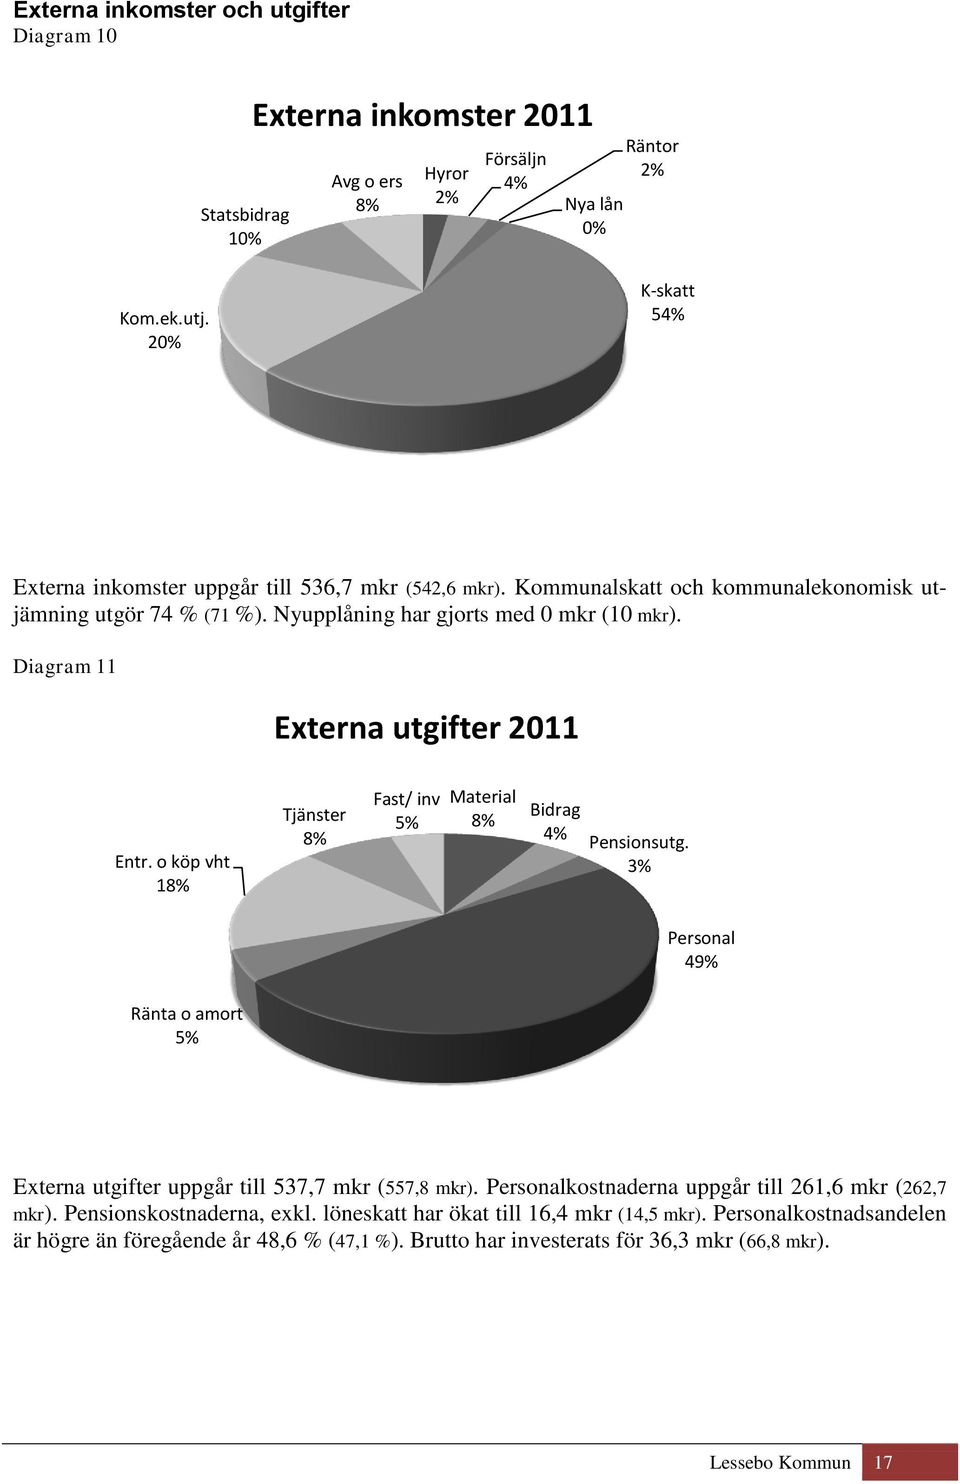 Diagram 11 Externa utgifter 2011 Entr. o köp vht 18% Tjänster 8% Fast/ inv 5% Material 8% Bidrag 4% Pensionsutg.